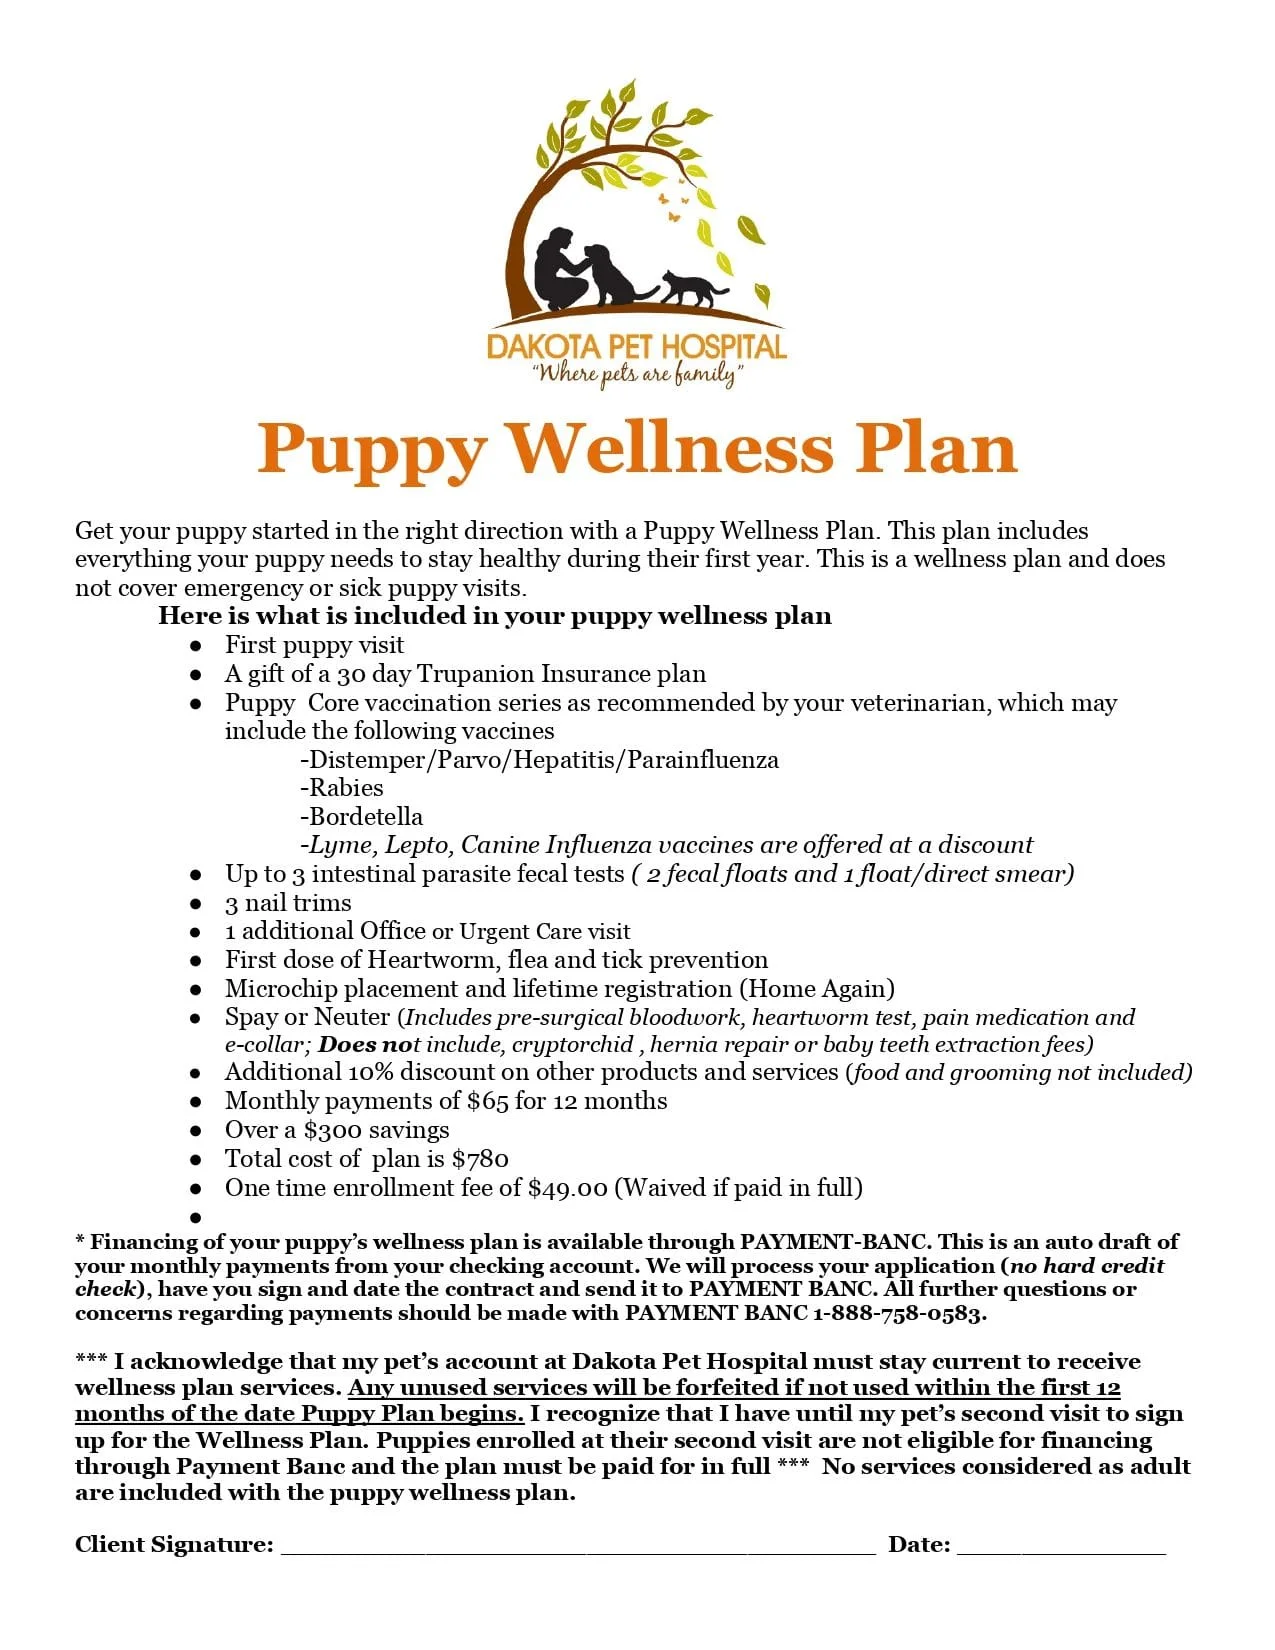 Puppy wellness plan